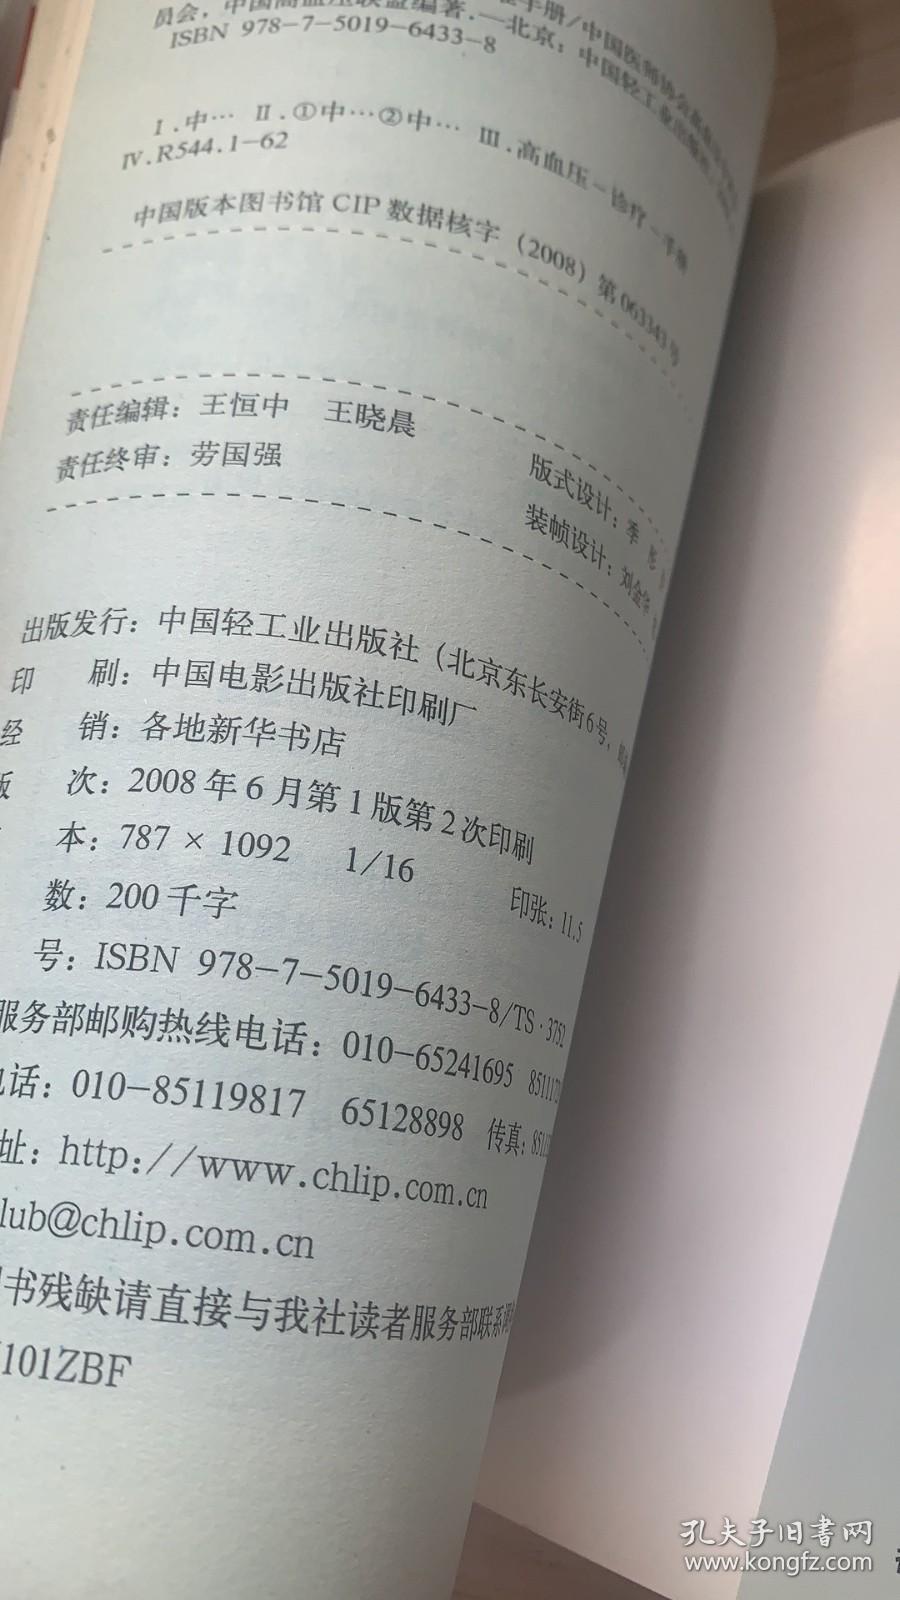 2008中国高血压患者自我管理标准手册